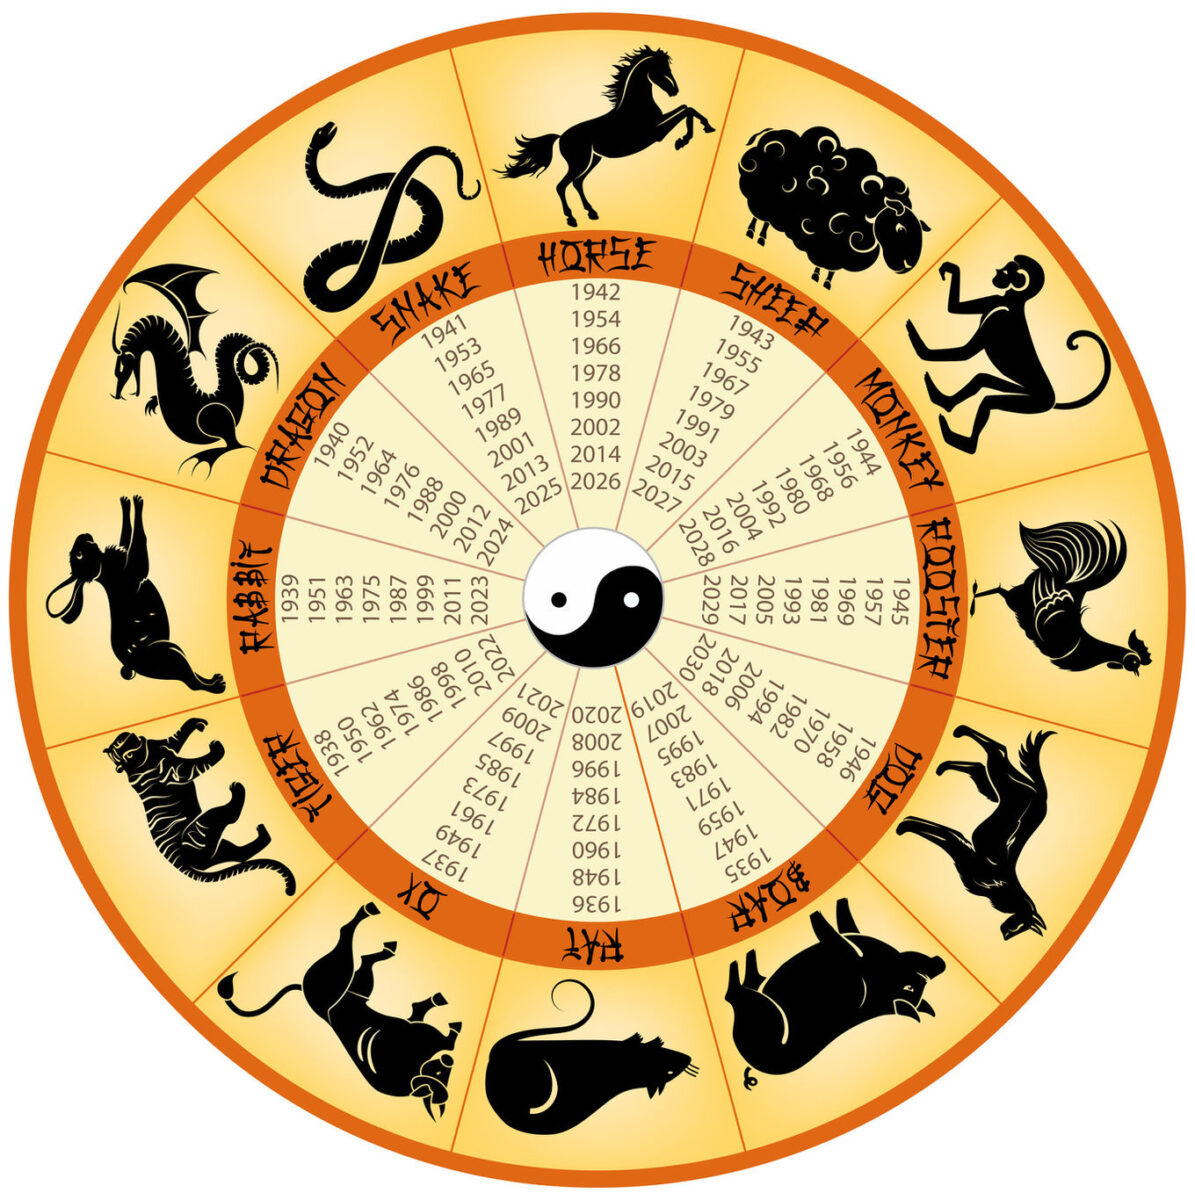 Zodiacul chinezesc este compus din 12 zodii reprezentate de animale